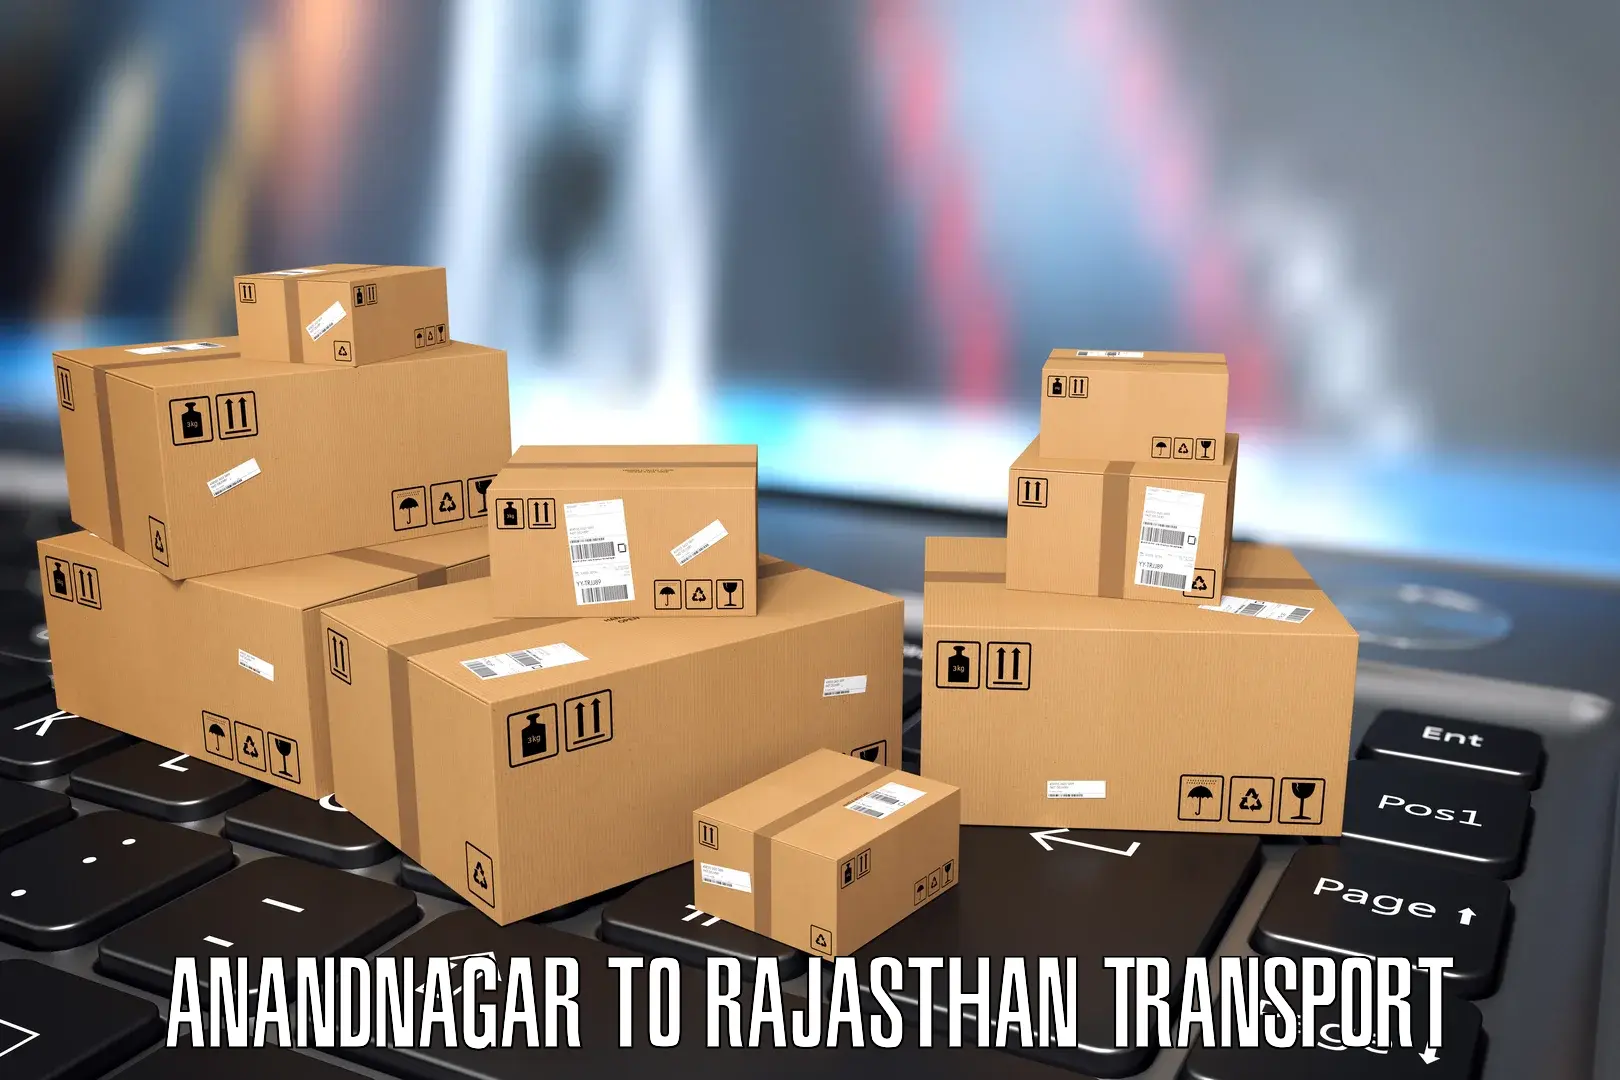 Delivery service in Anandnagar to Chittorgarh